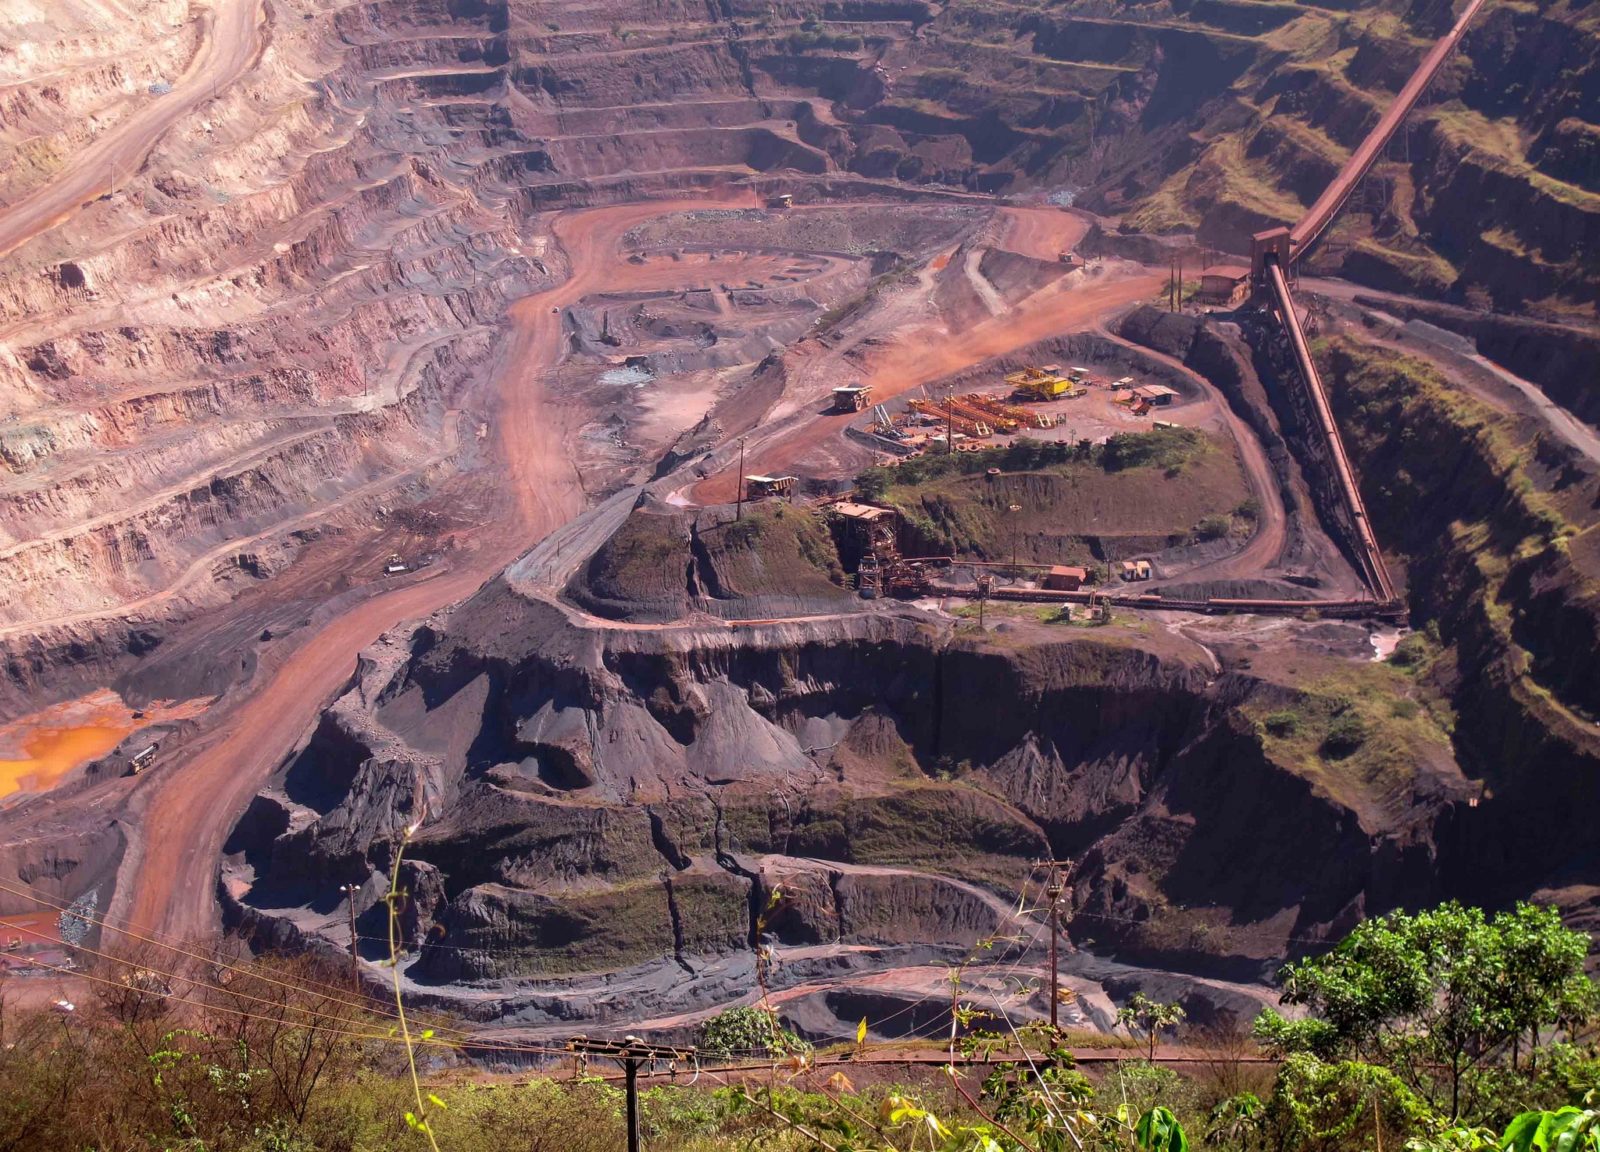 Железная руда, крупнейшее месторождение железной руды в россии, запасы железной руды в мире, способы добычи, свойства, применение, лотарингский железорудный бассейн